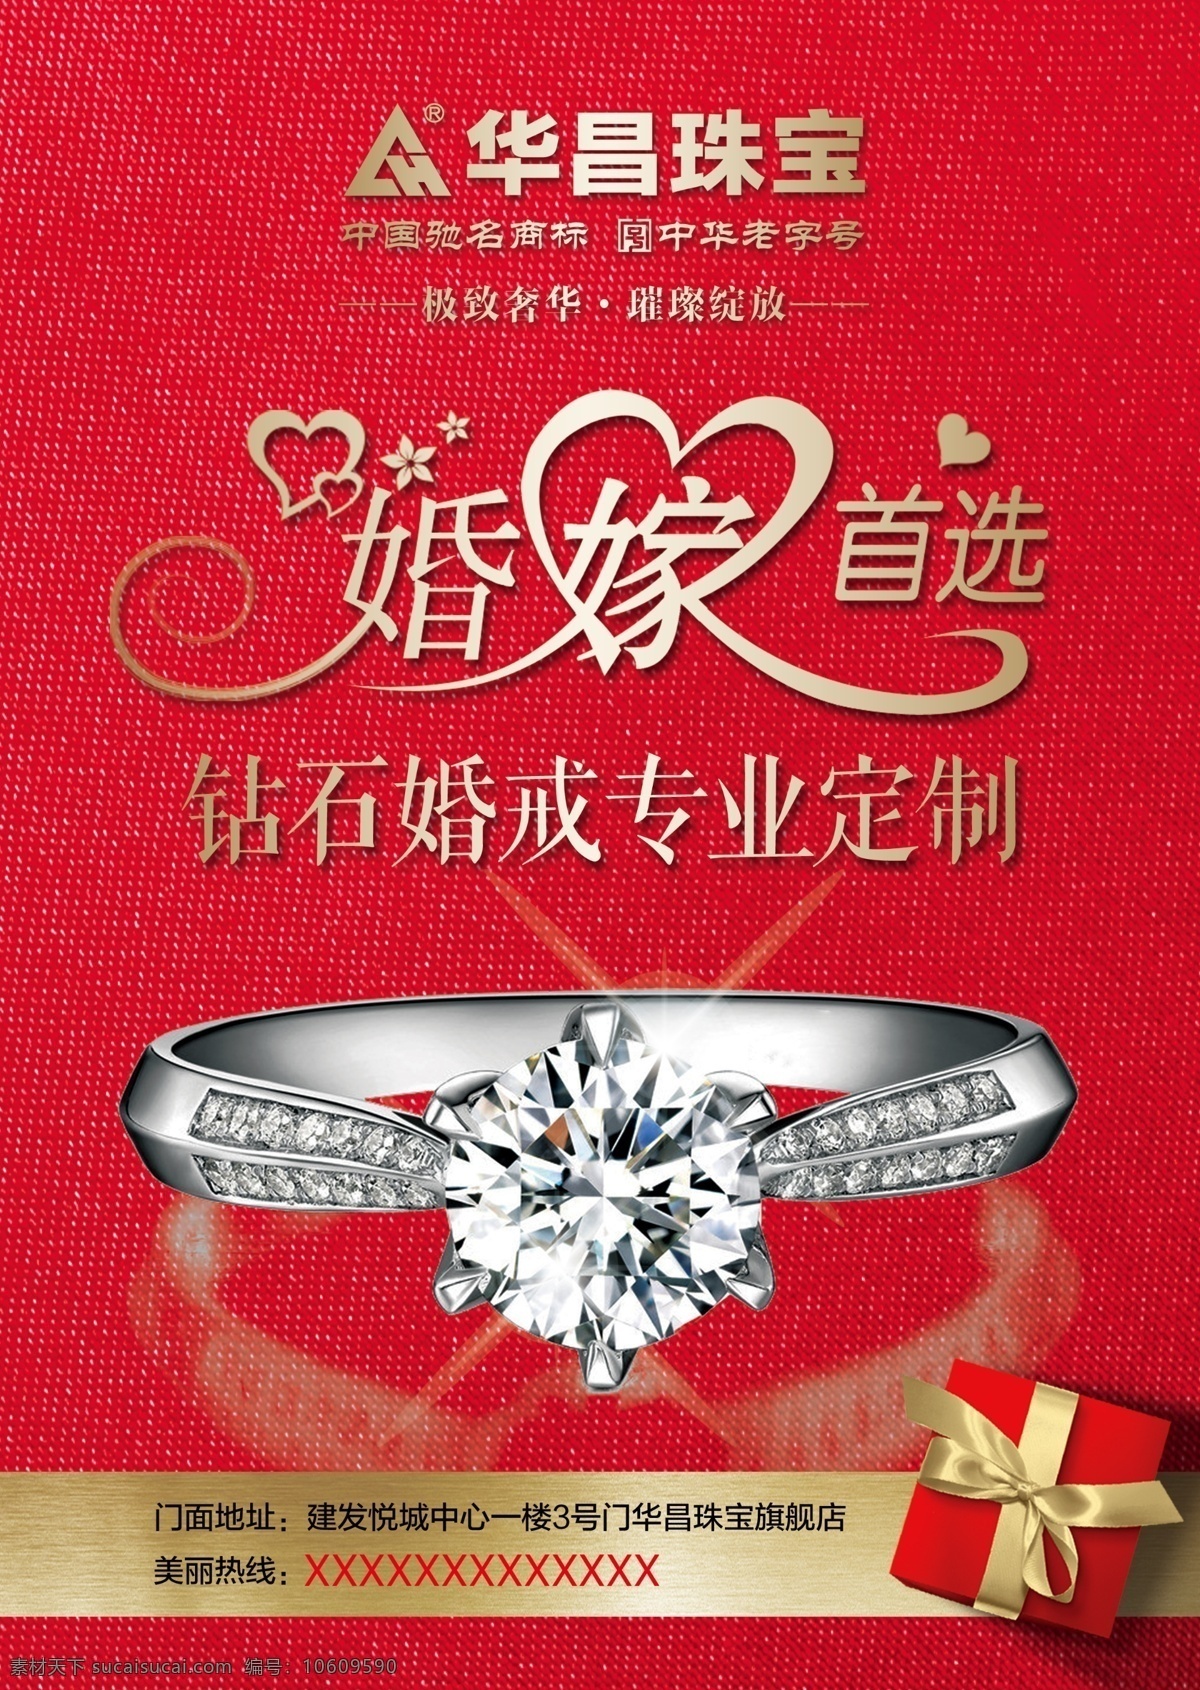 华昌珠宝 中国珠宝 珠宝 钻戒 婚嫁首选 钻石 婚戒 设计空间